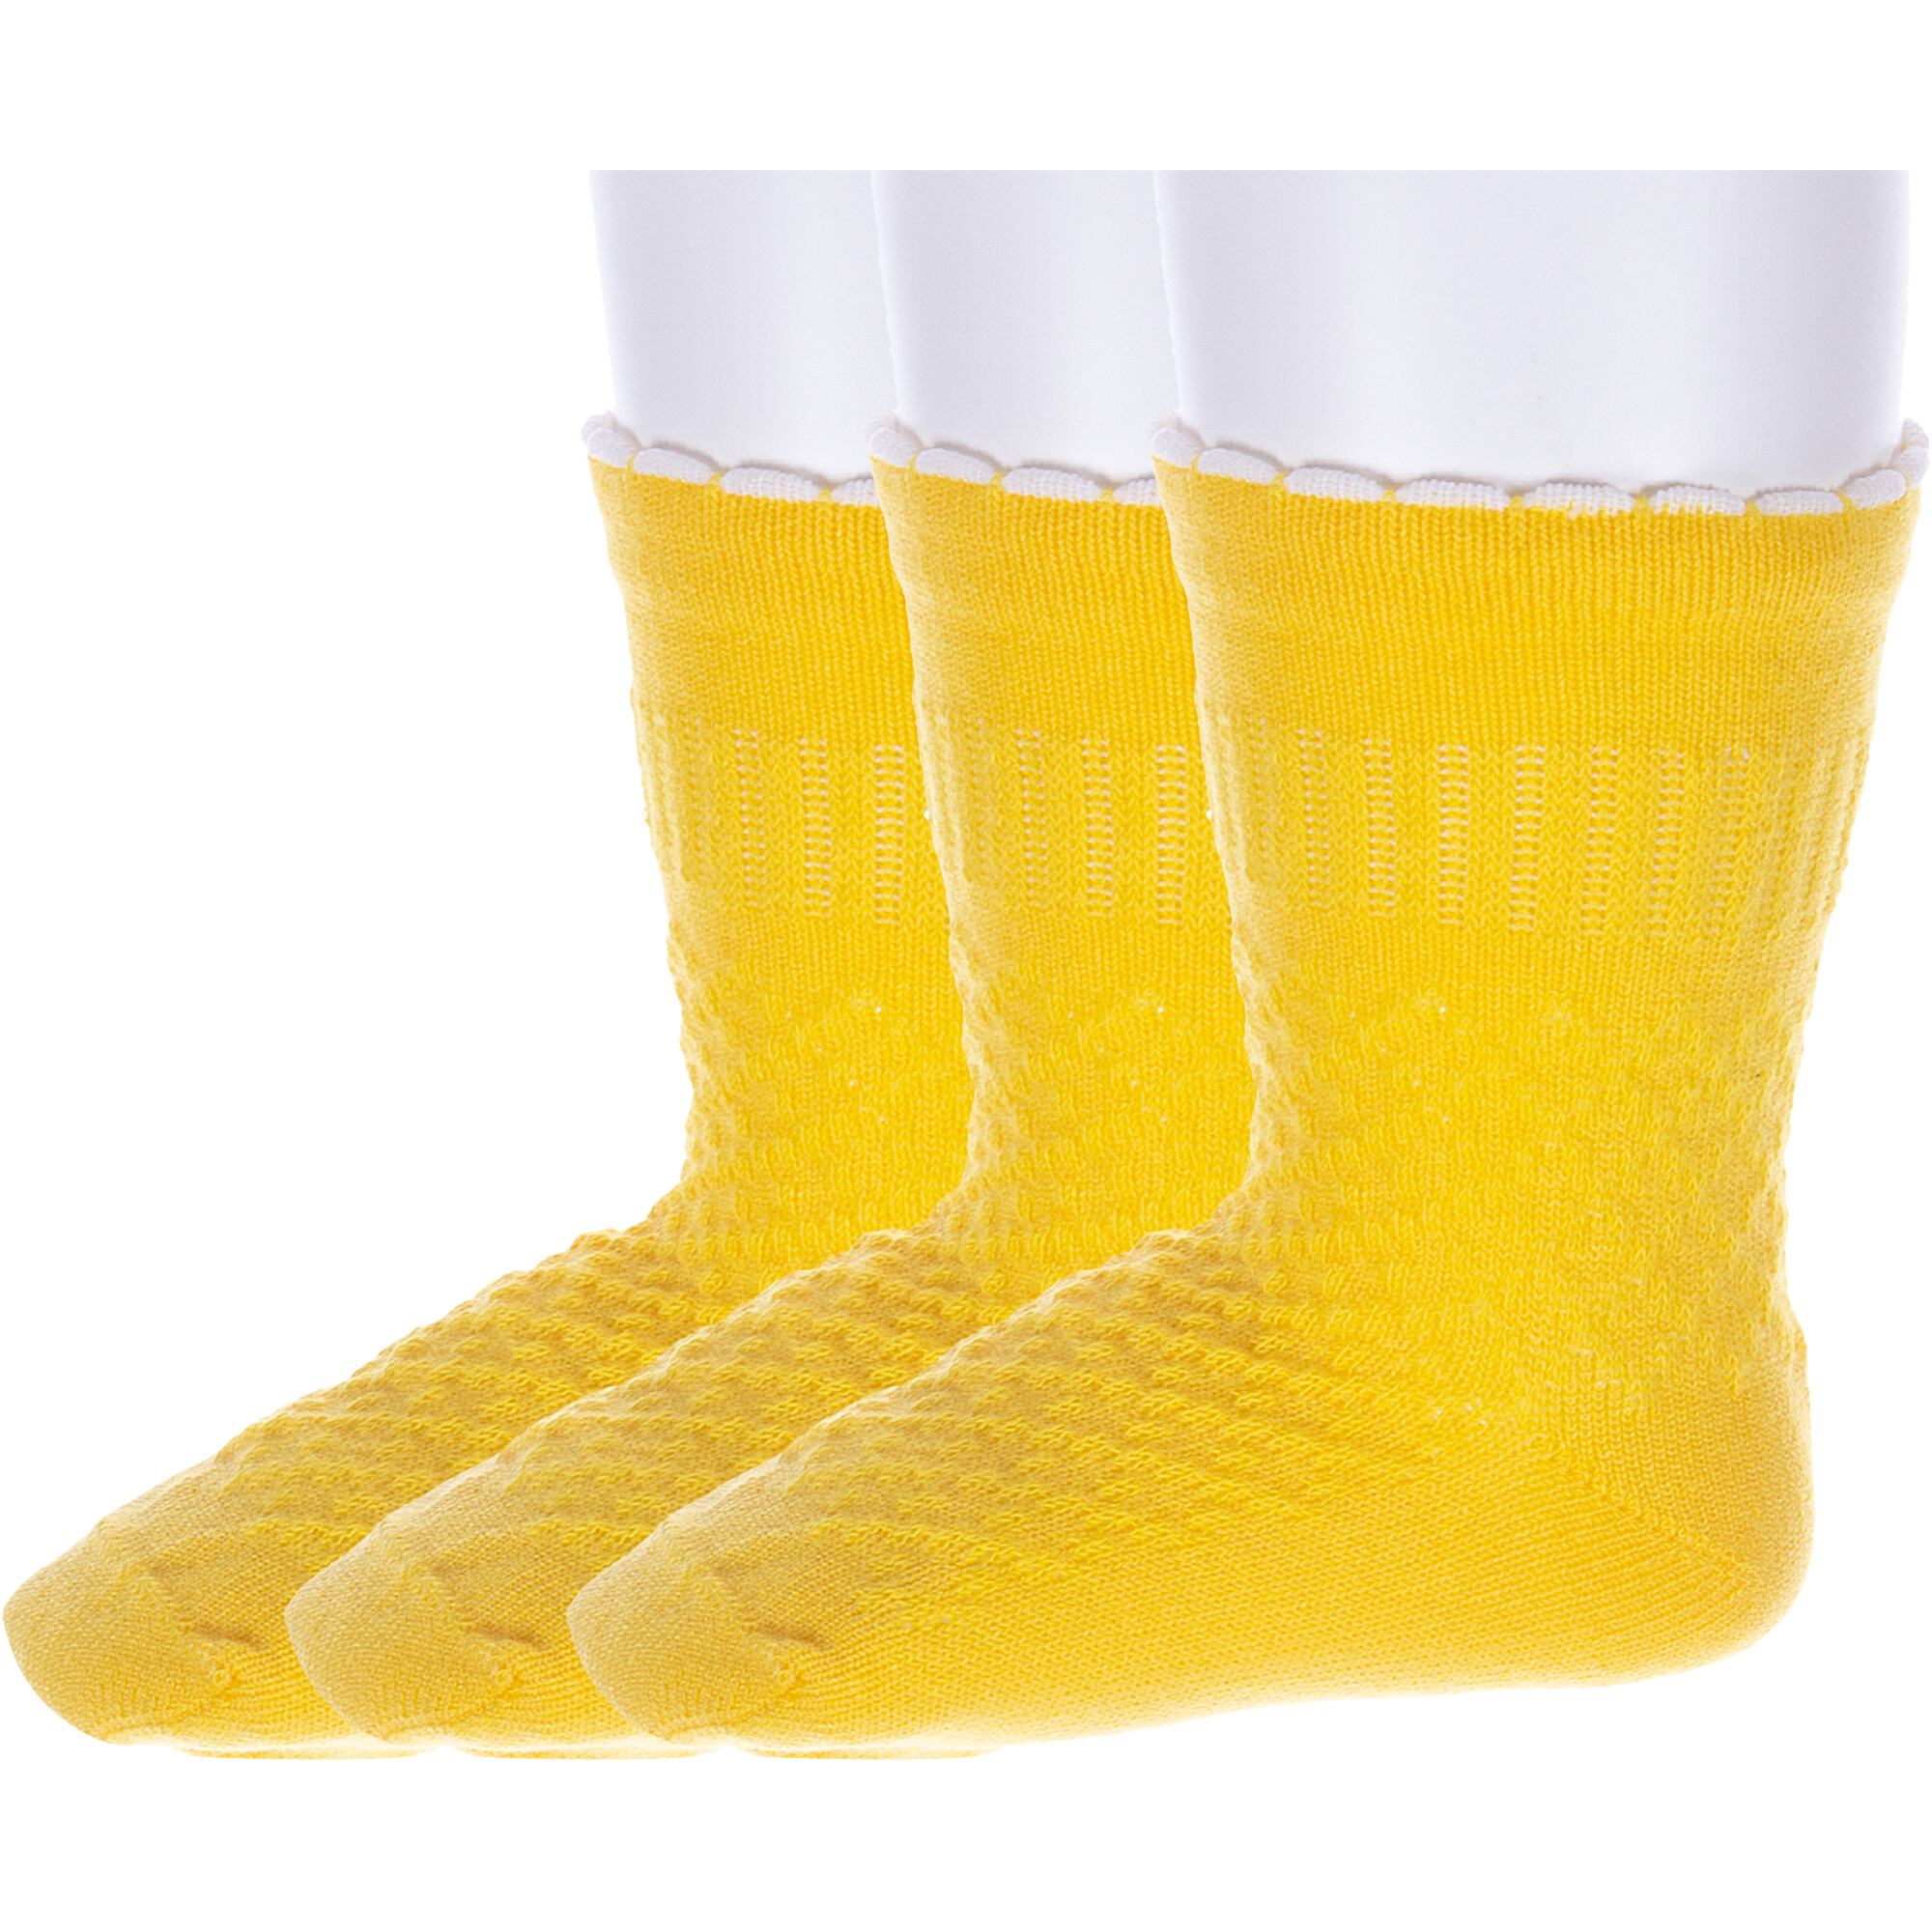 Носки детские Носкофф 3-ЛС58, желтые, 41974 носки детские носкофф 3 лс58 синий желтый серый 16 18